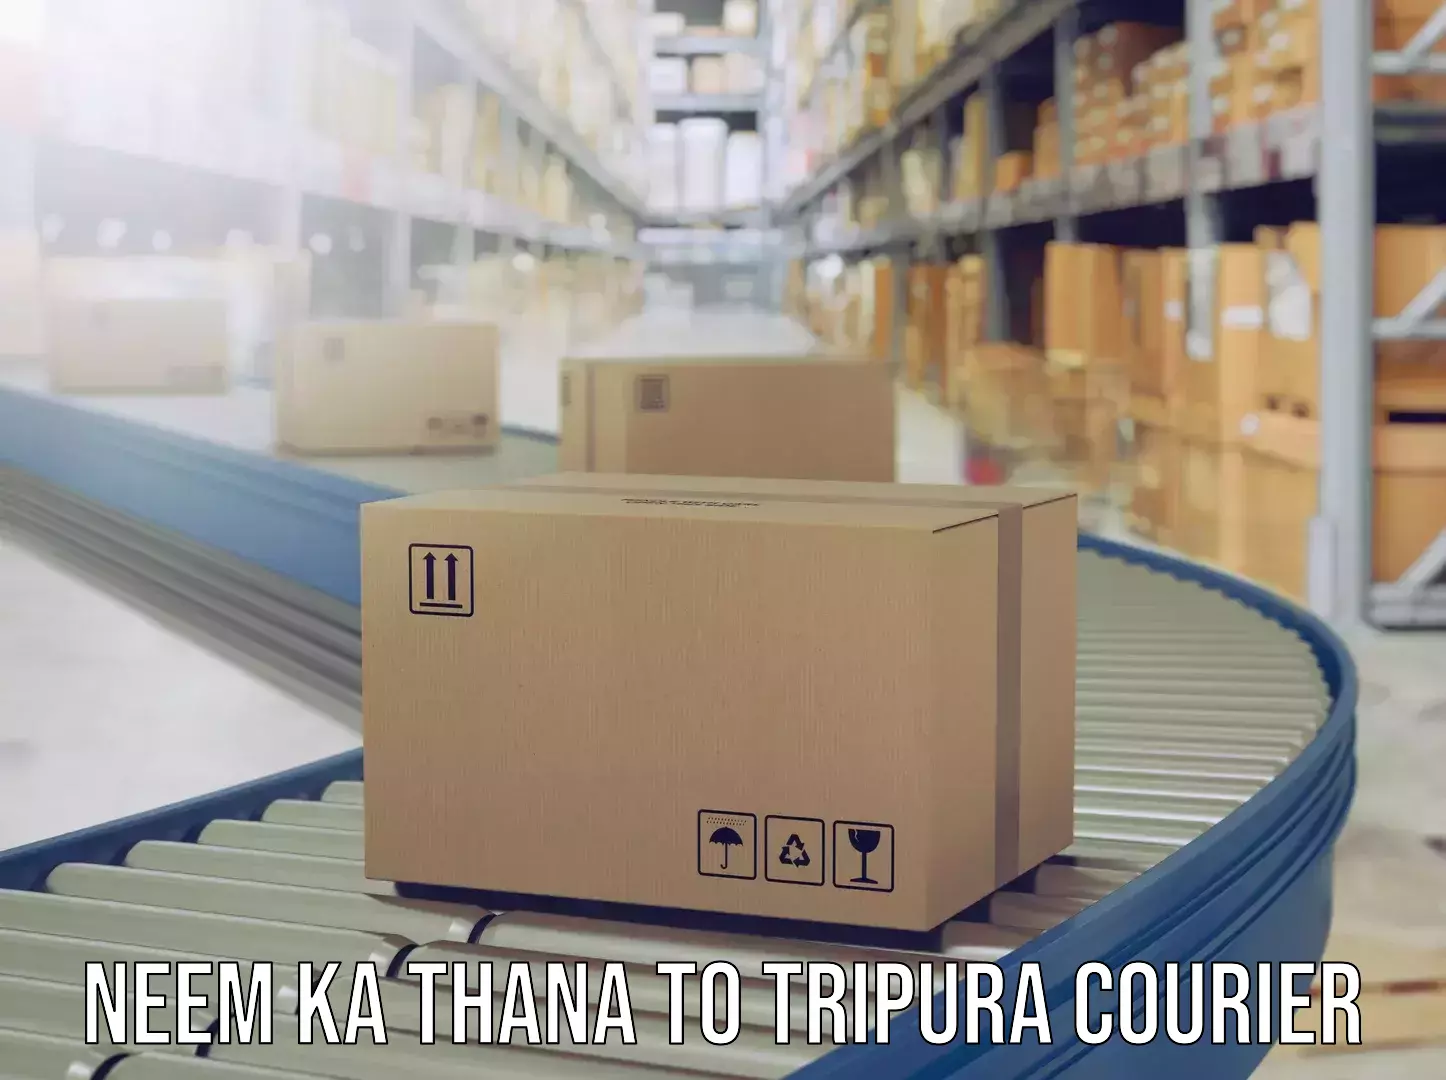 Luggage delivery app Neem ka Thana to Manu Bazar